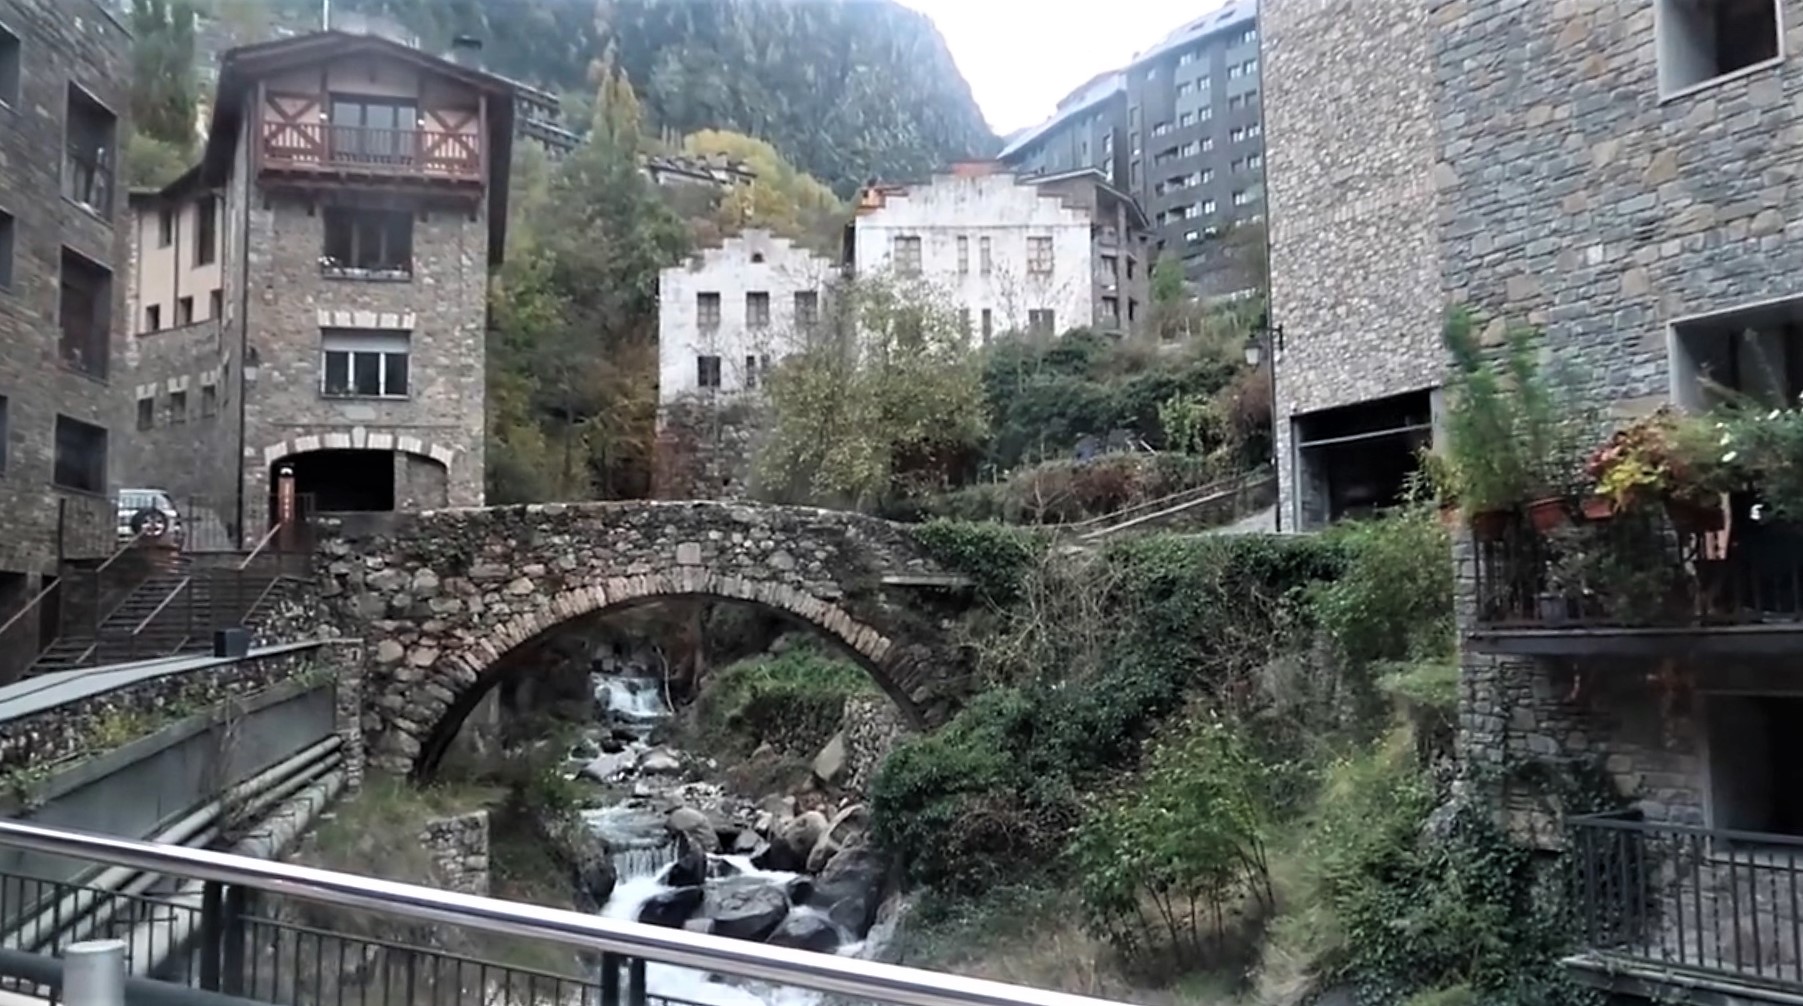 Old stone bridge over the river in old quarter of Andorra la Vella city